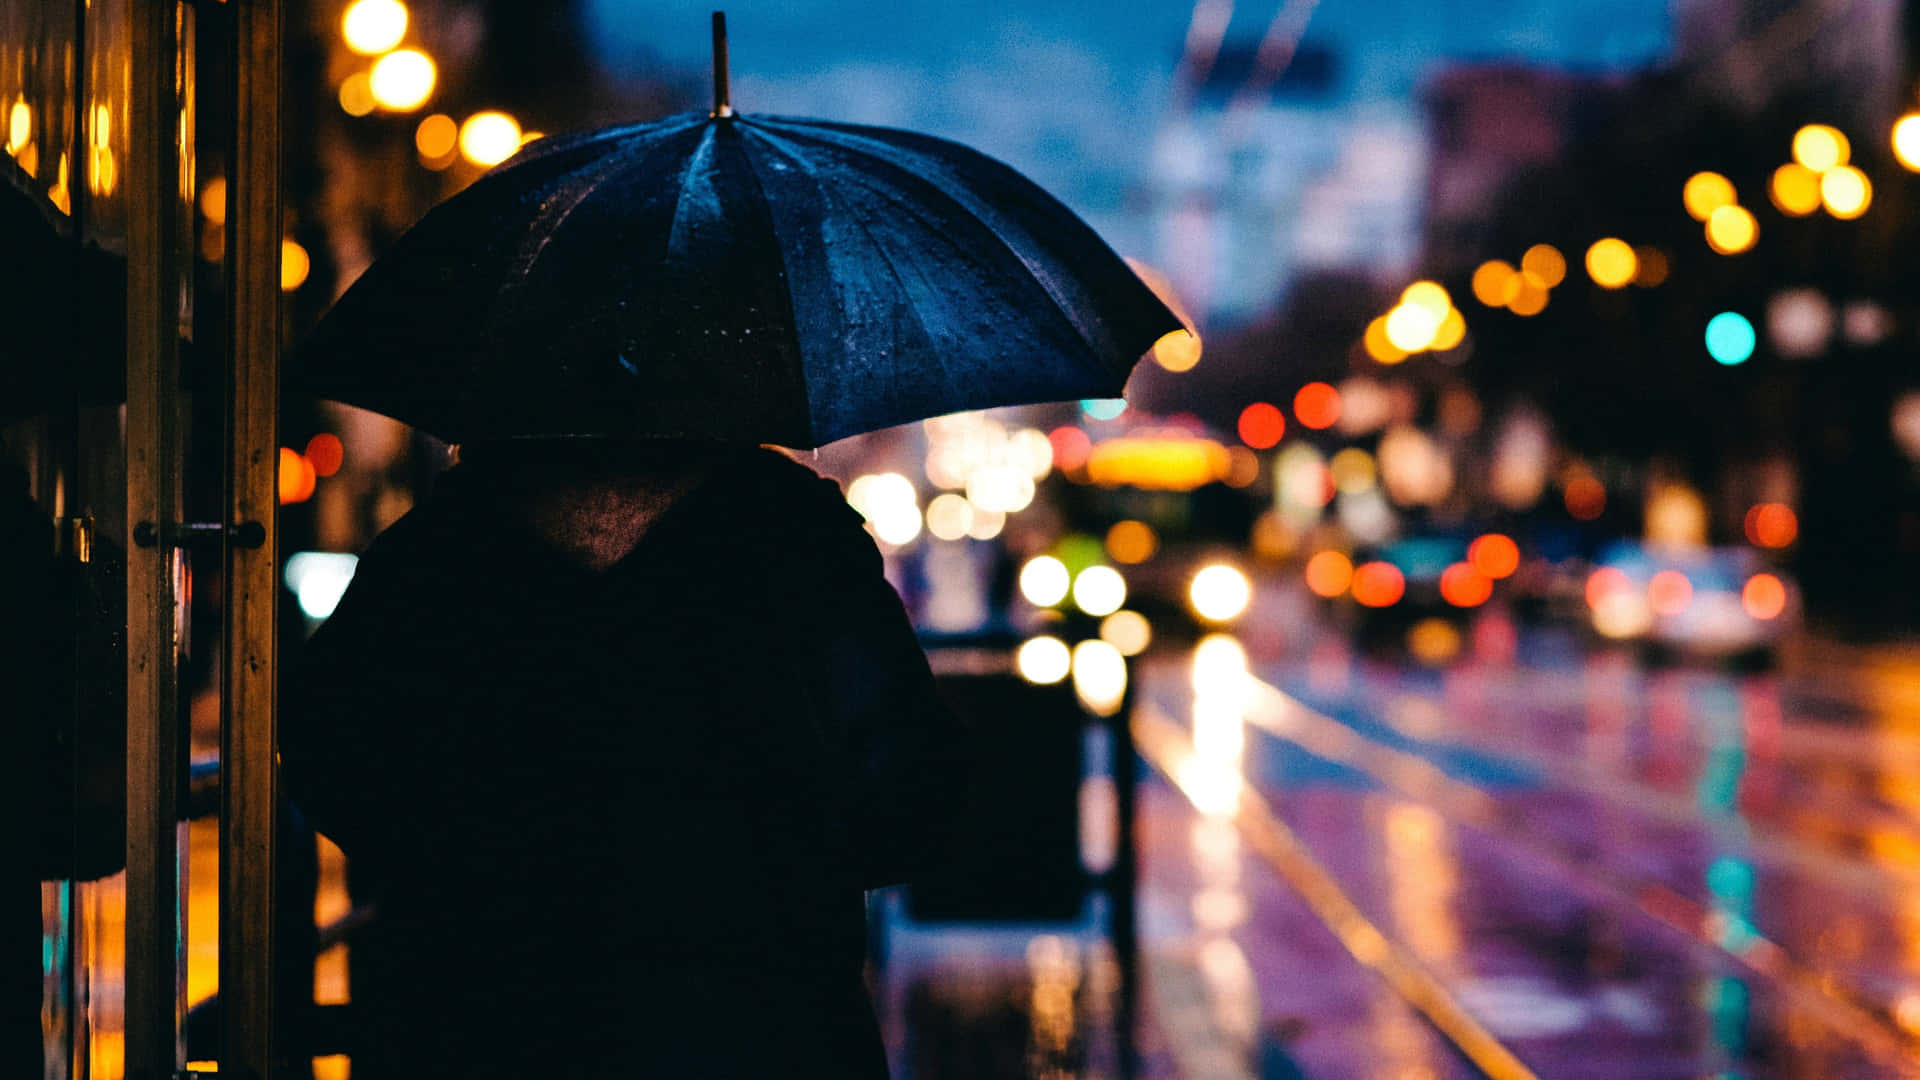 Mysterious rain cascading down a city street